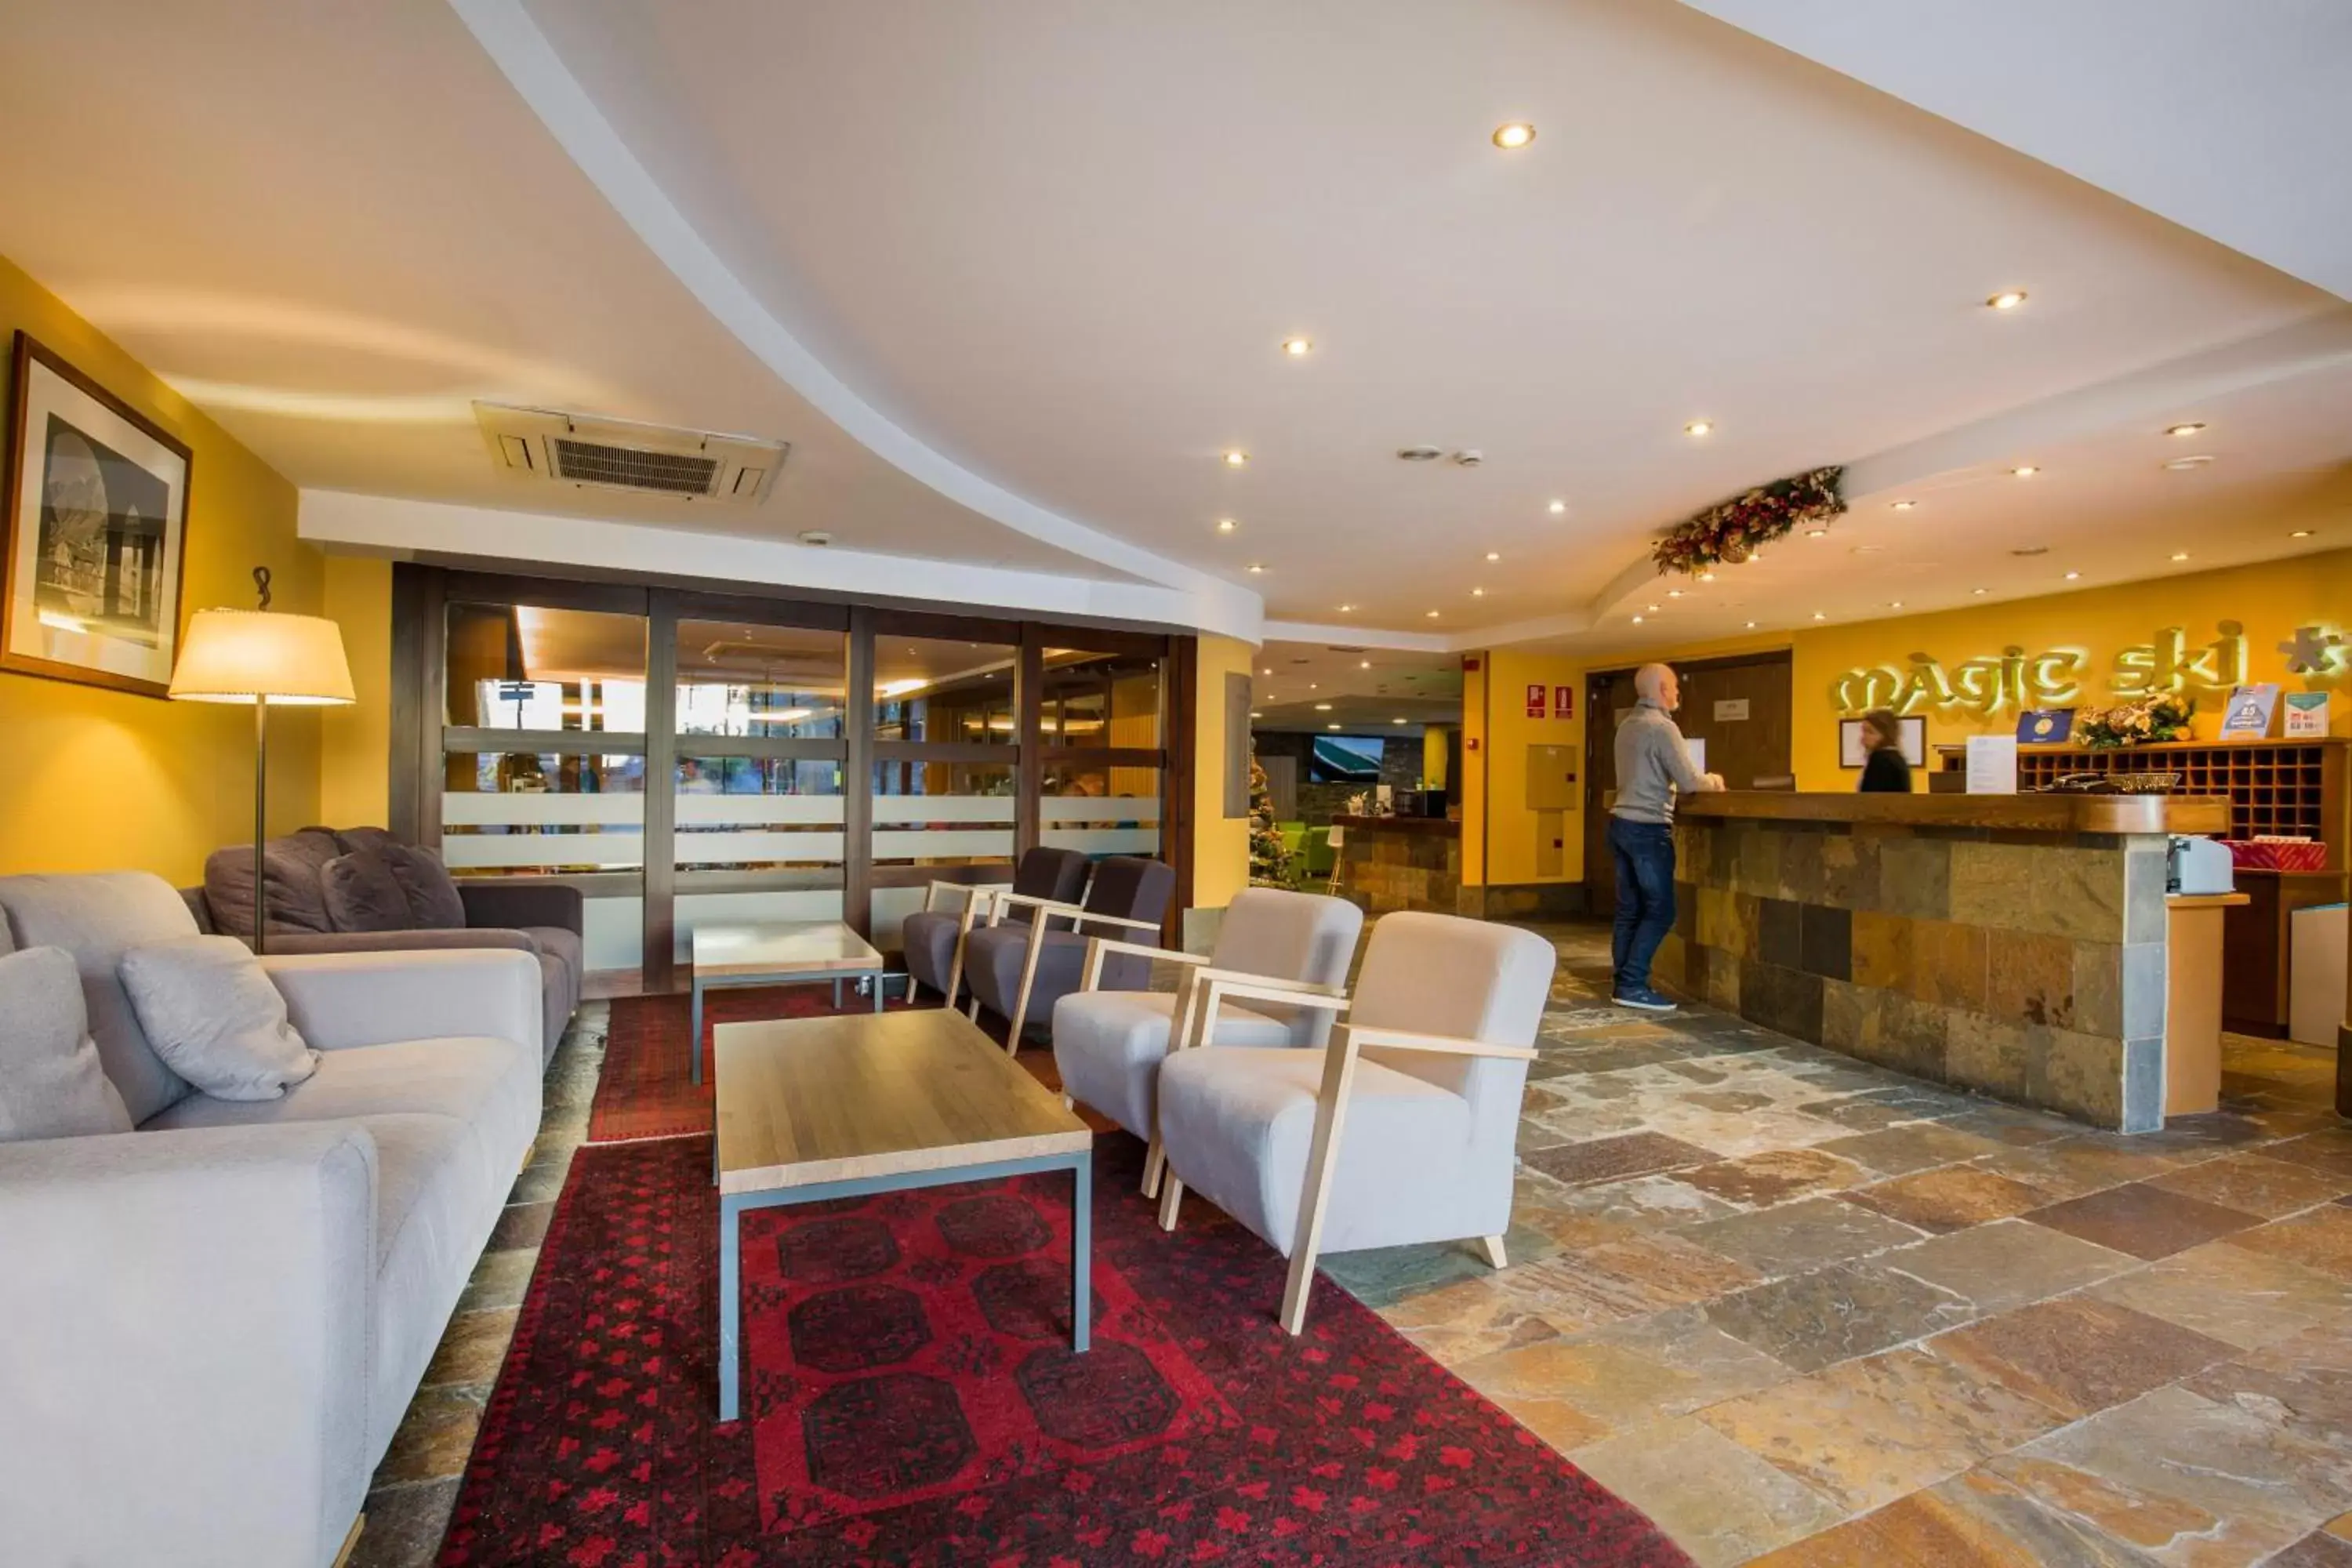 Lobby or reception in Hotel Màgic Ski